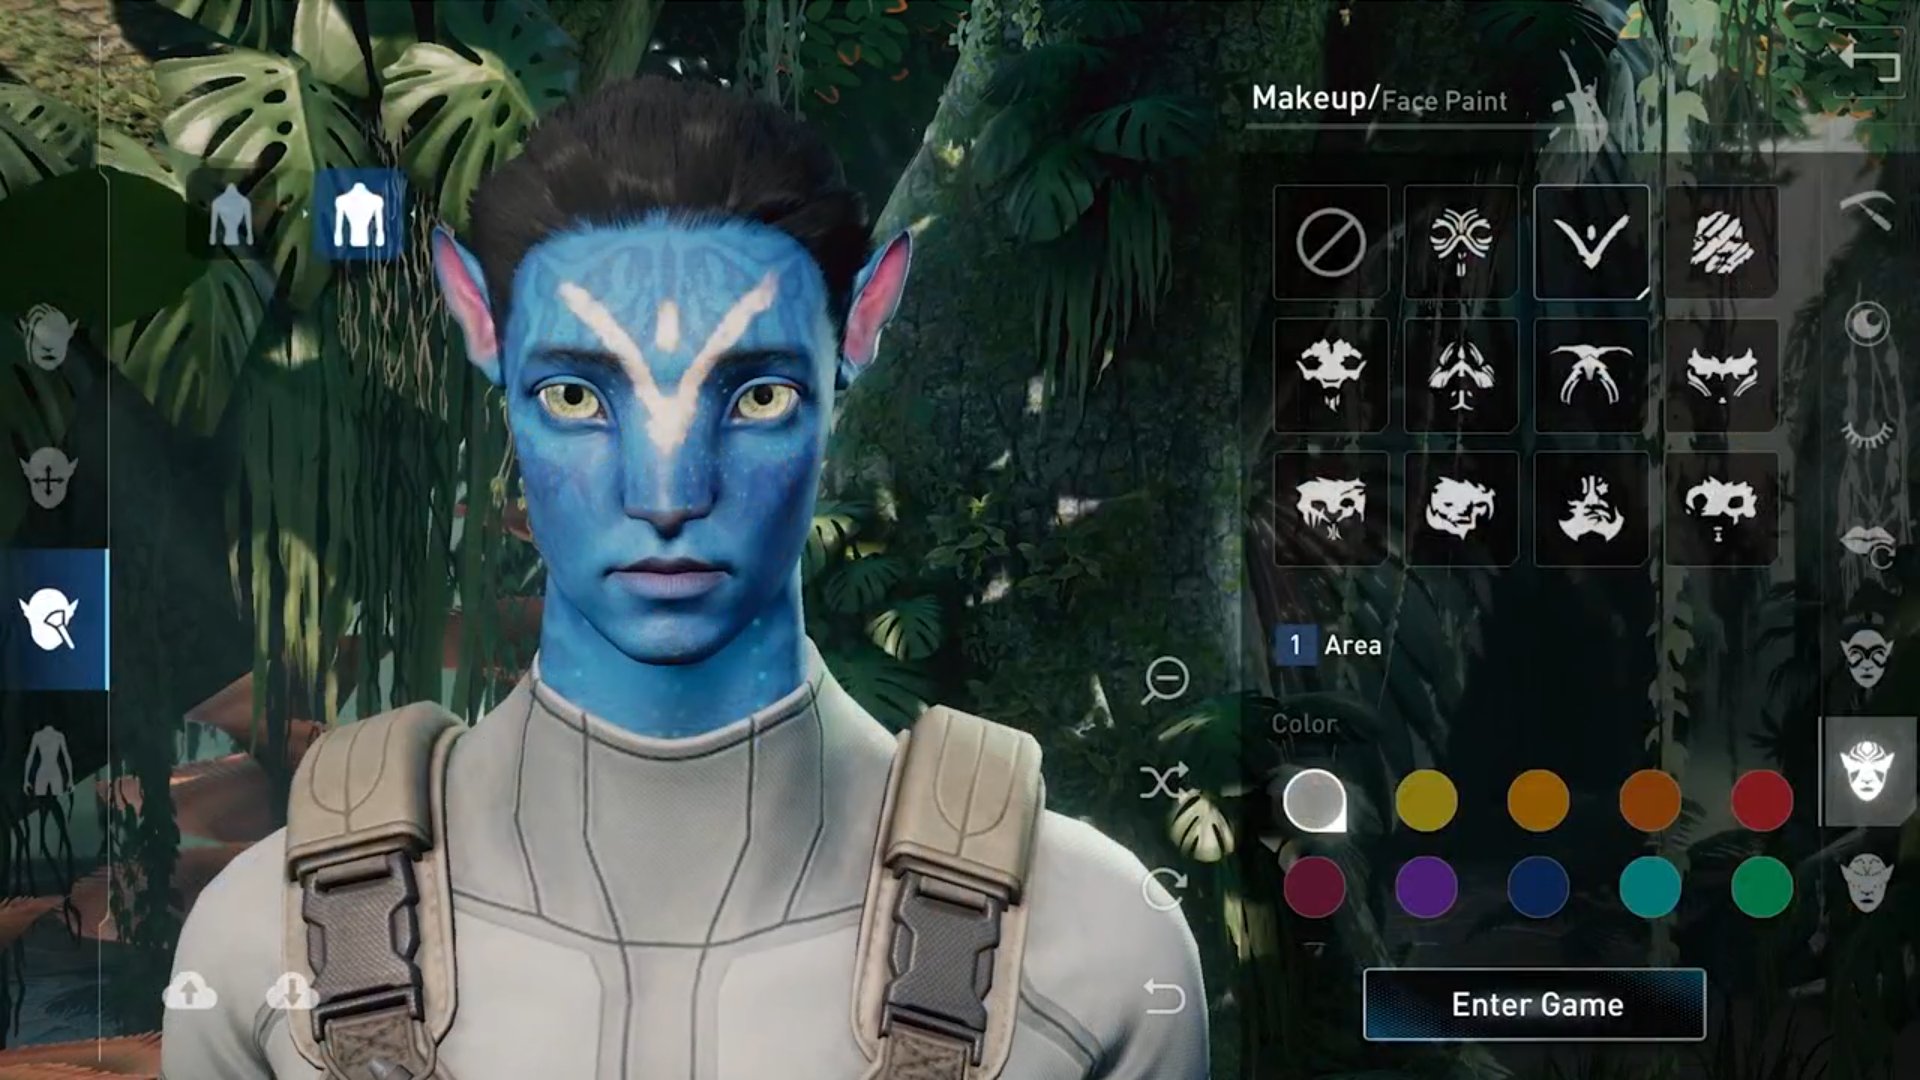 Avatar game rpg: Hẳn bạn đã từng ước mơ được trở thành người bảo vệ Pandora và trải nghiệm cuộc phiêu lưu đầy hấp dẫn? Với Avatar game rpg, tất cả đều có thể trở thành hiện thực. Hãy trở thành một trong những người hàng đầu trên Pandora và tham gia vào hành trình đầy oanh liệt này!